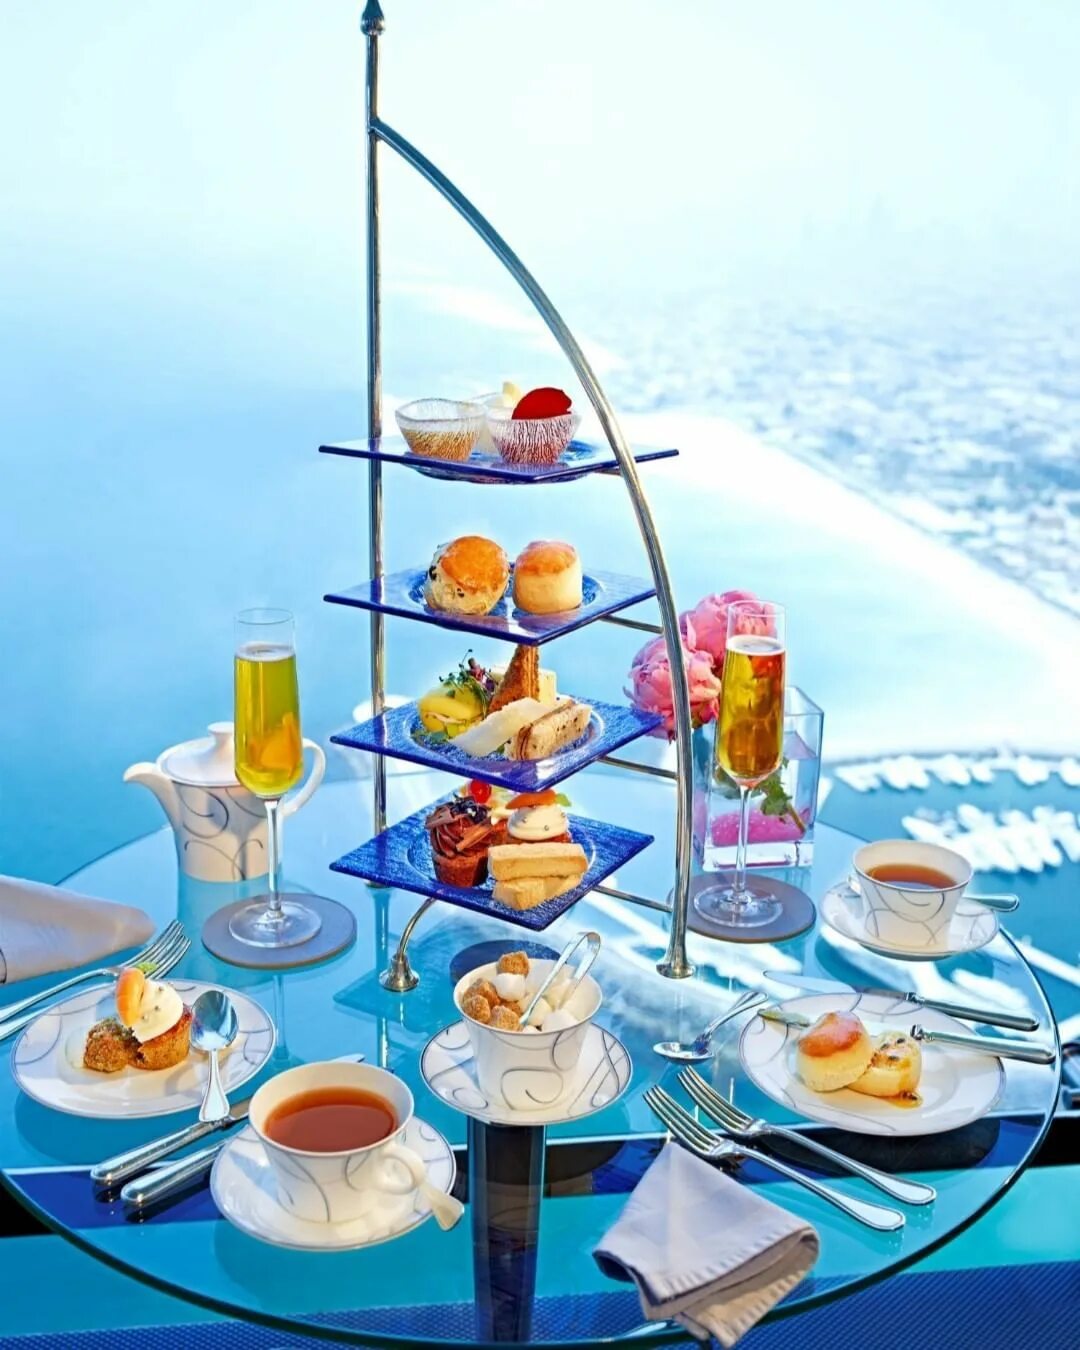 Дубай Бурдж Аль араб ресторан. Завтрак в Эмиратах. Завтрак в отеле.